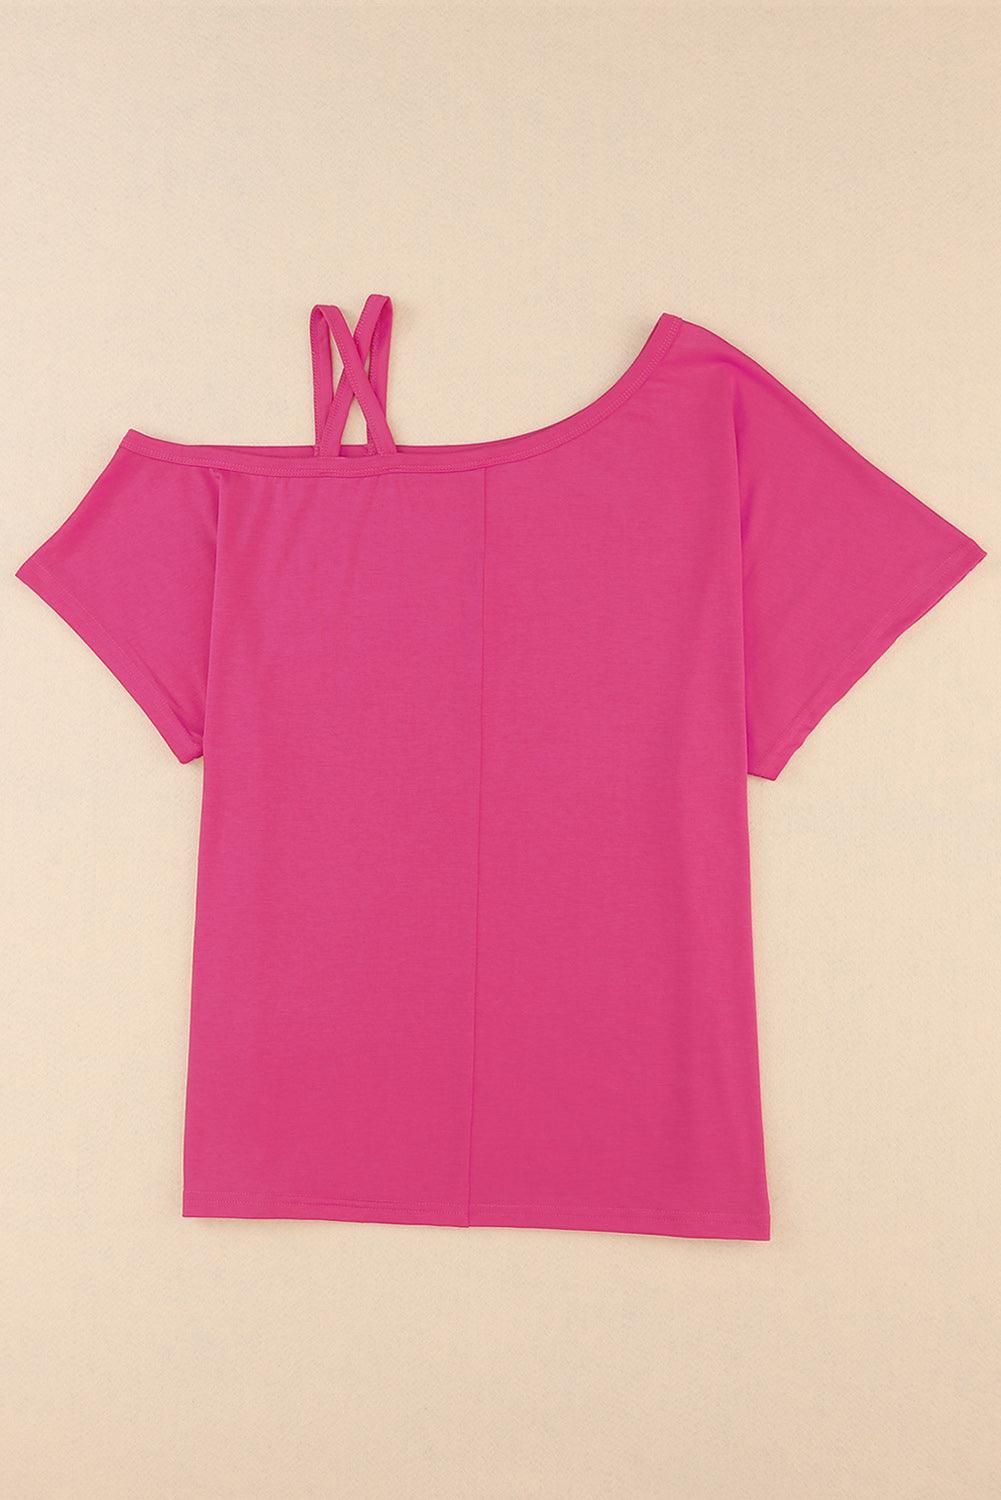 Women's Shirts Crisscross Asymmetrical Neck Short Sleeve Top